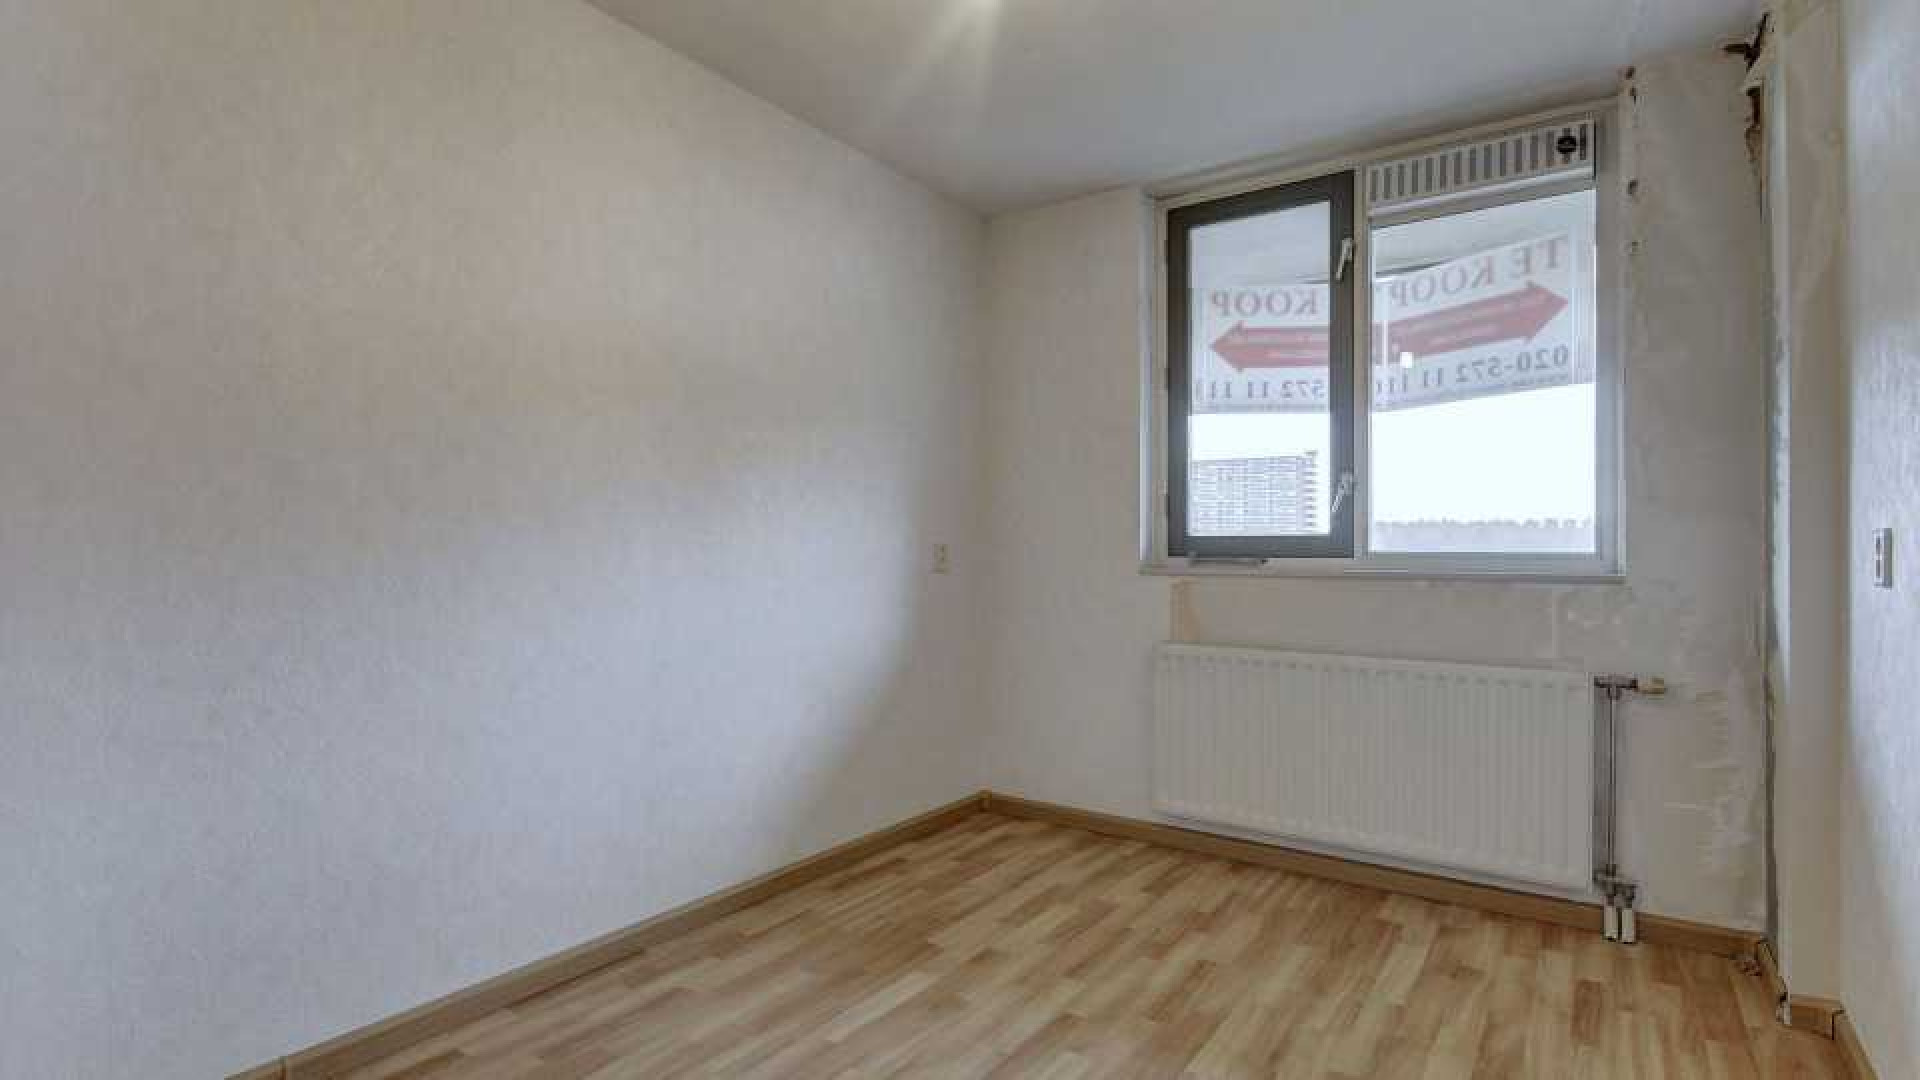 Patrick Kluivert verkoopt zijn Amsterdamse appartement. Zie foto's